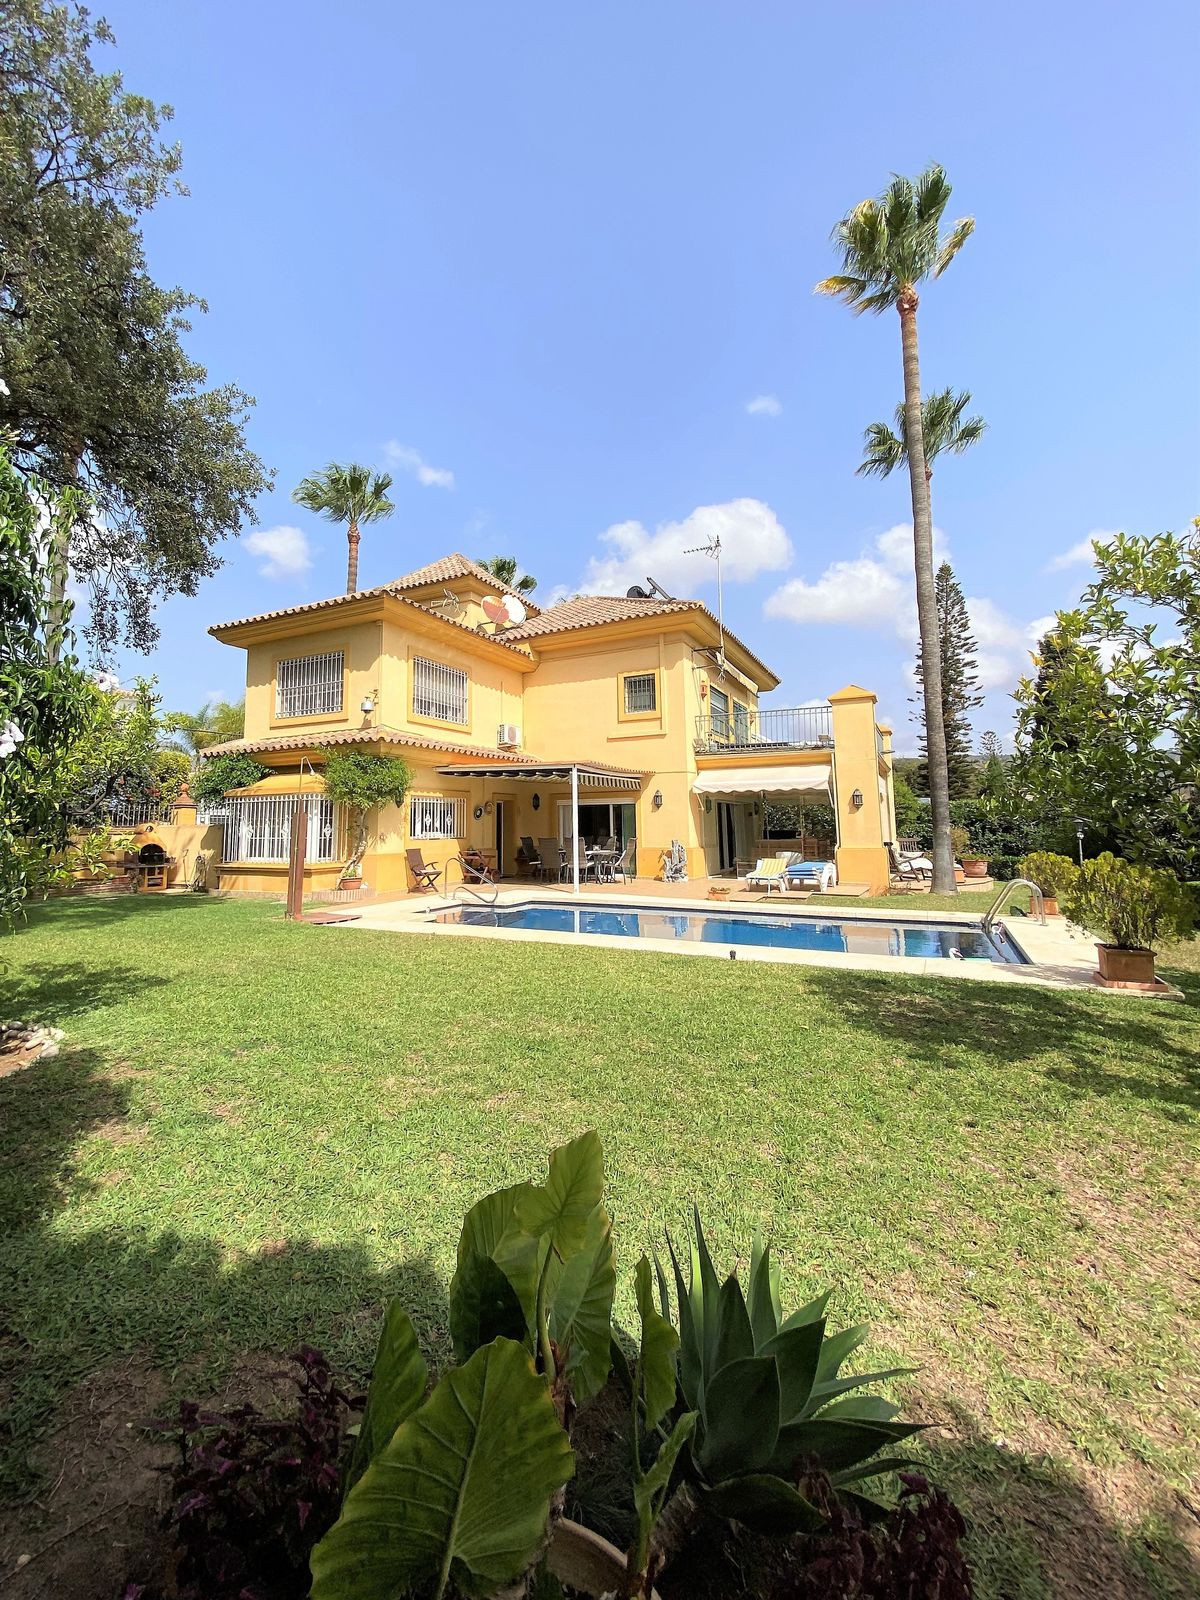 						Villa  Detached
													for sale 
																			 in El Rosario
					